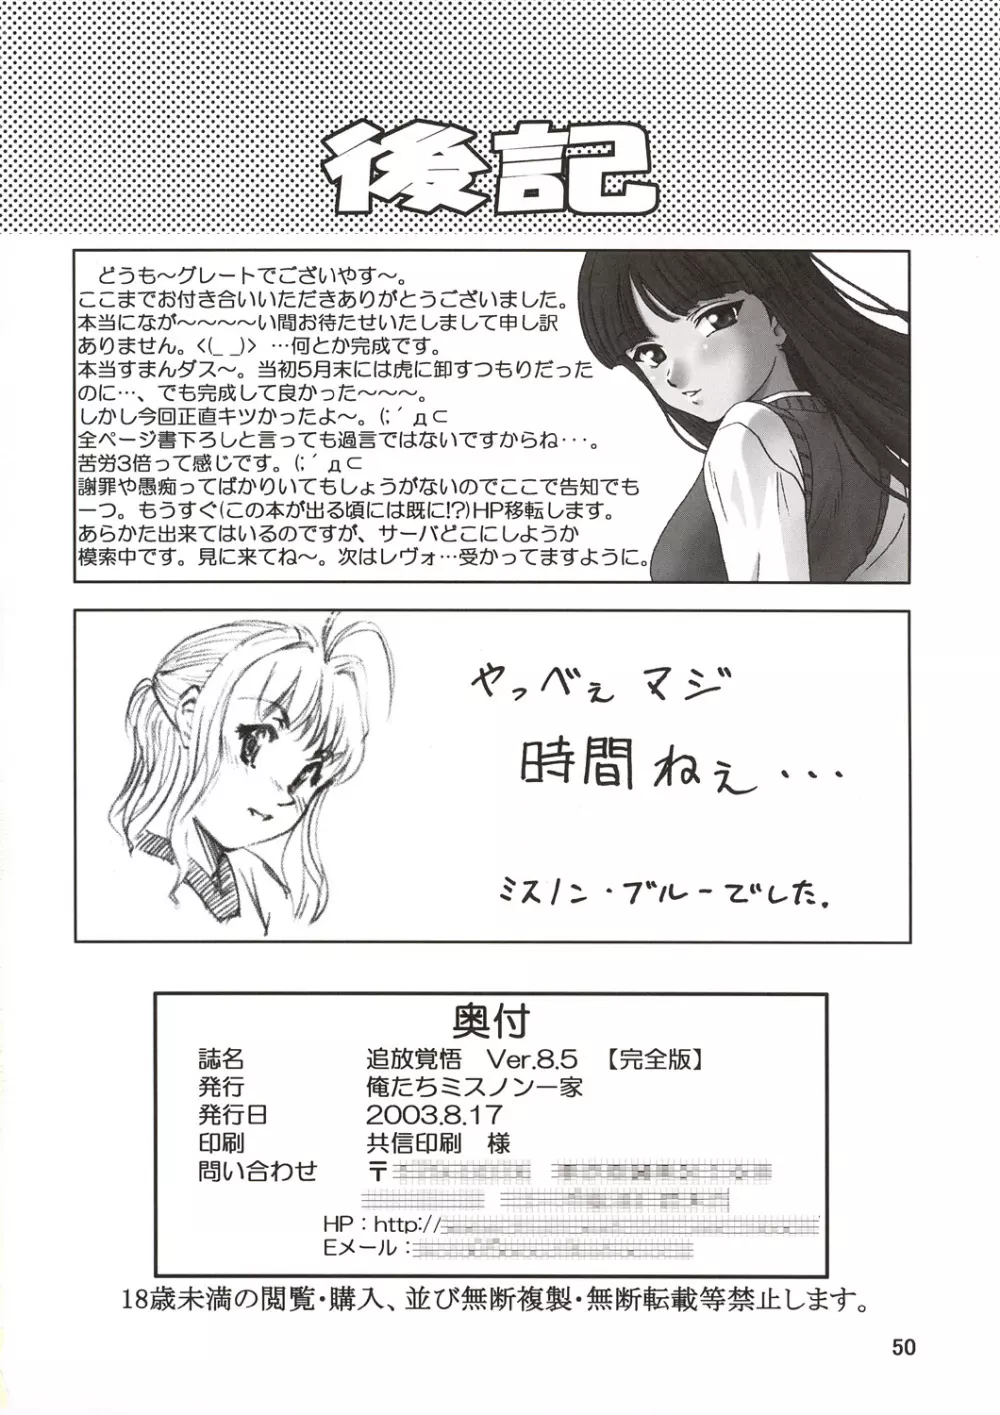 追放覚悟 Ver.8.5 【完全版】 52ページ